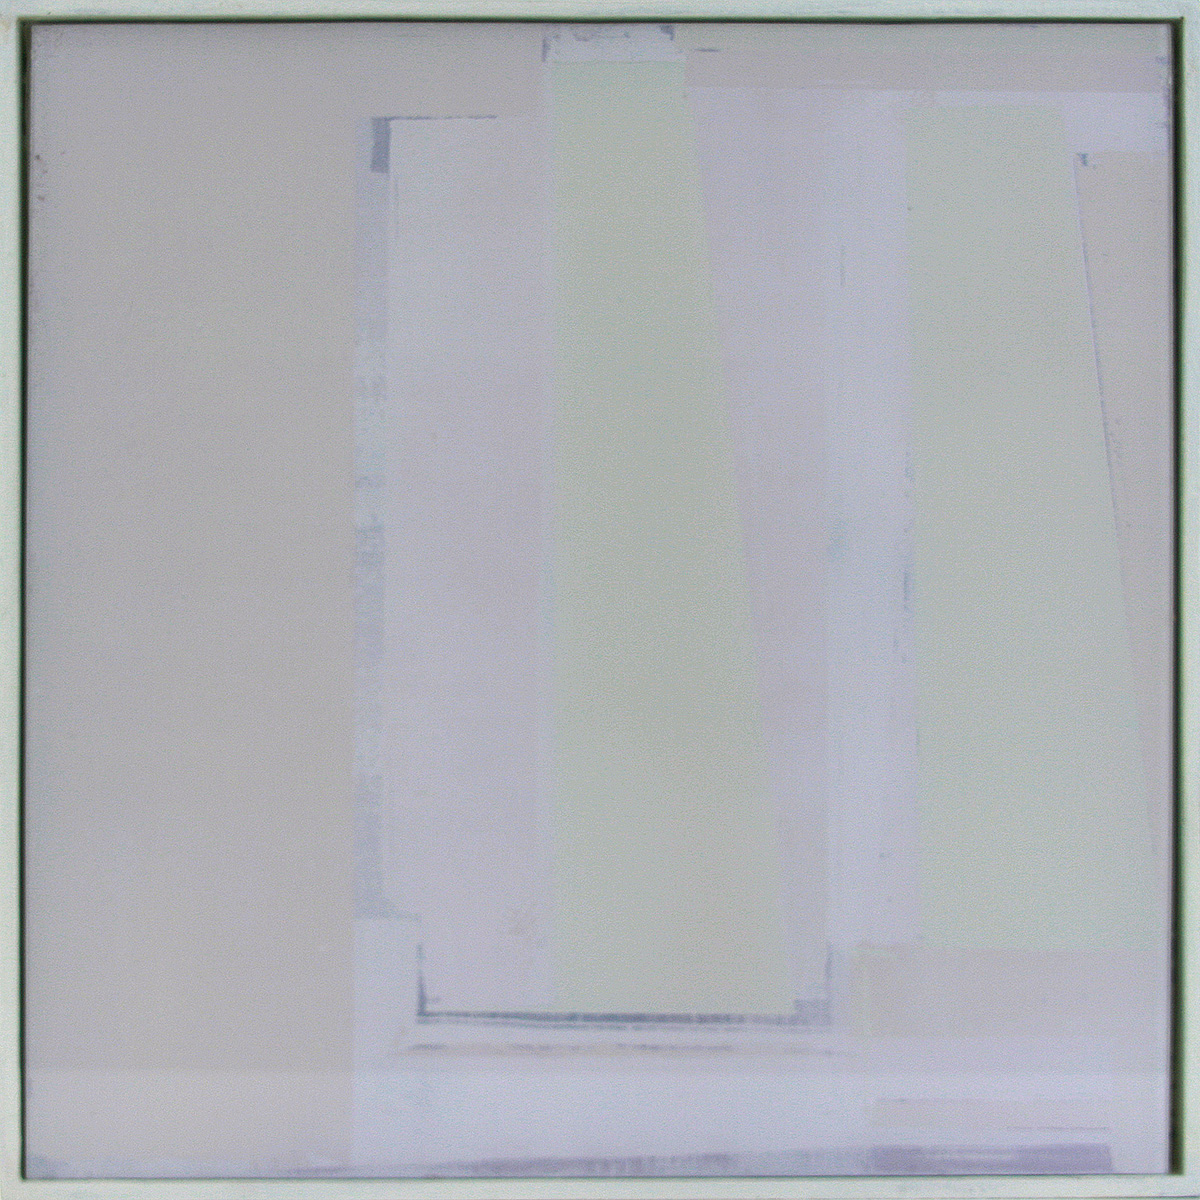 Auf-Glas-Malerei 1 / Schichtungen, 201630 x 30 cmPigment, grounded on glass, framed